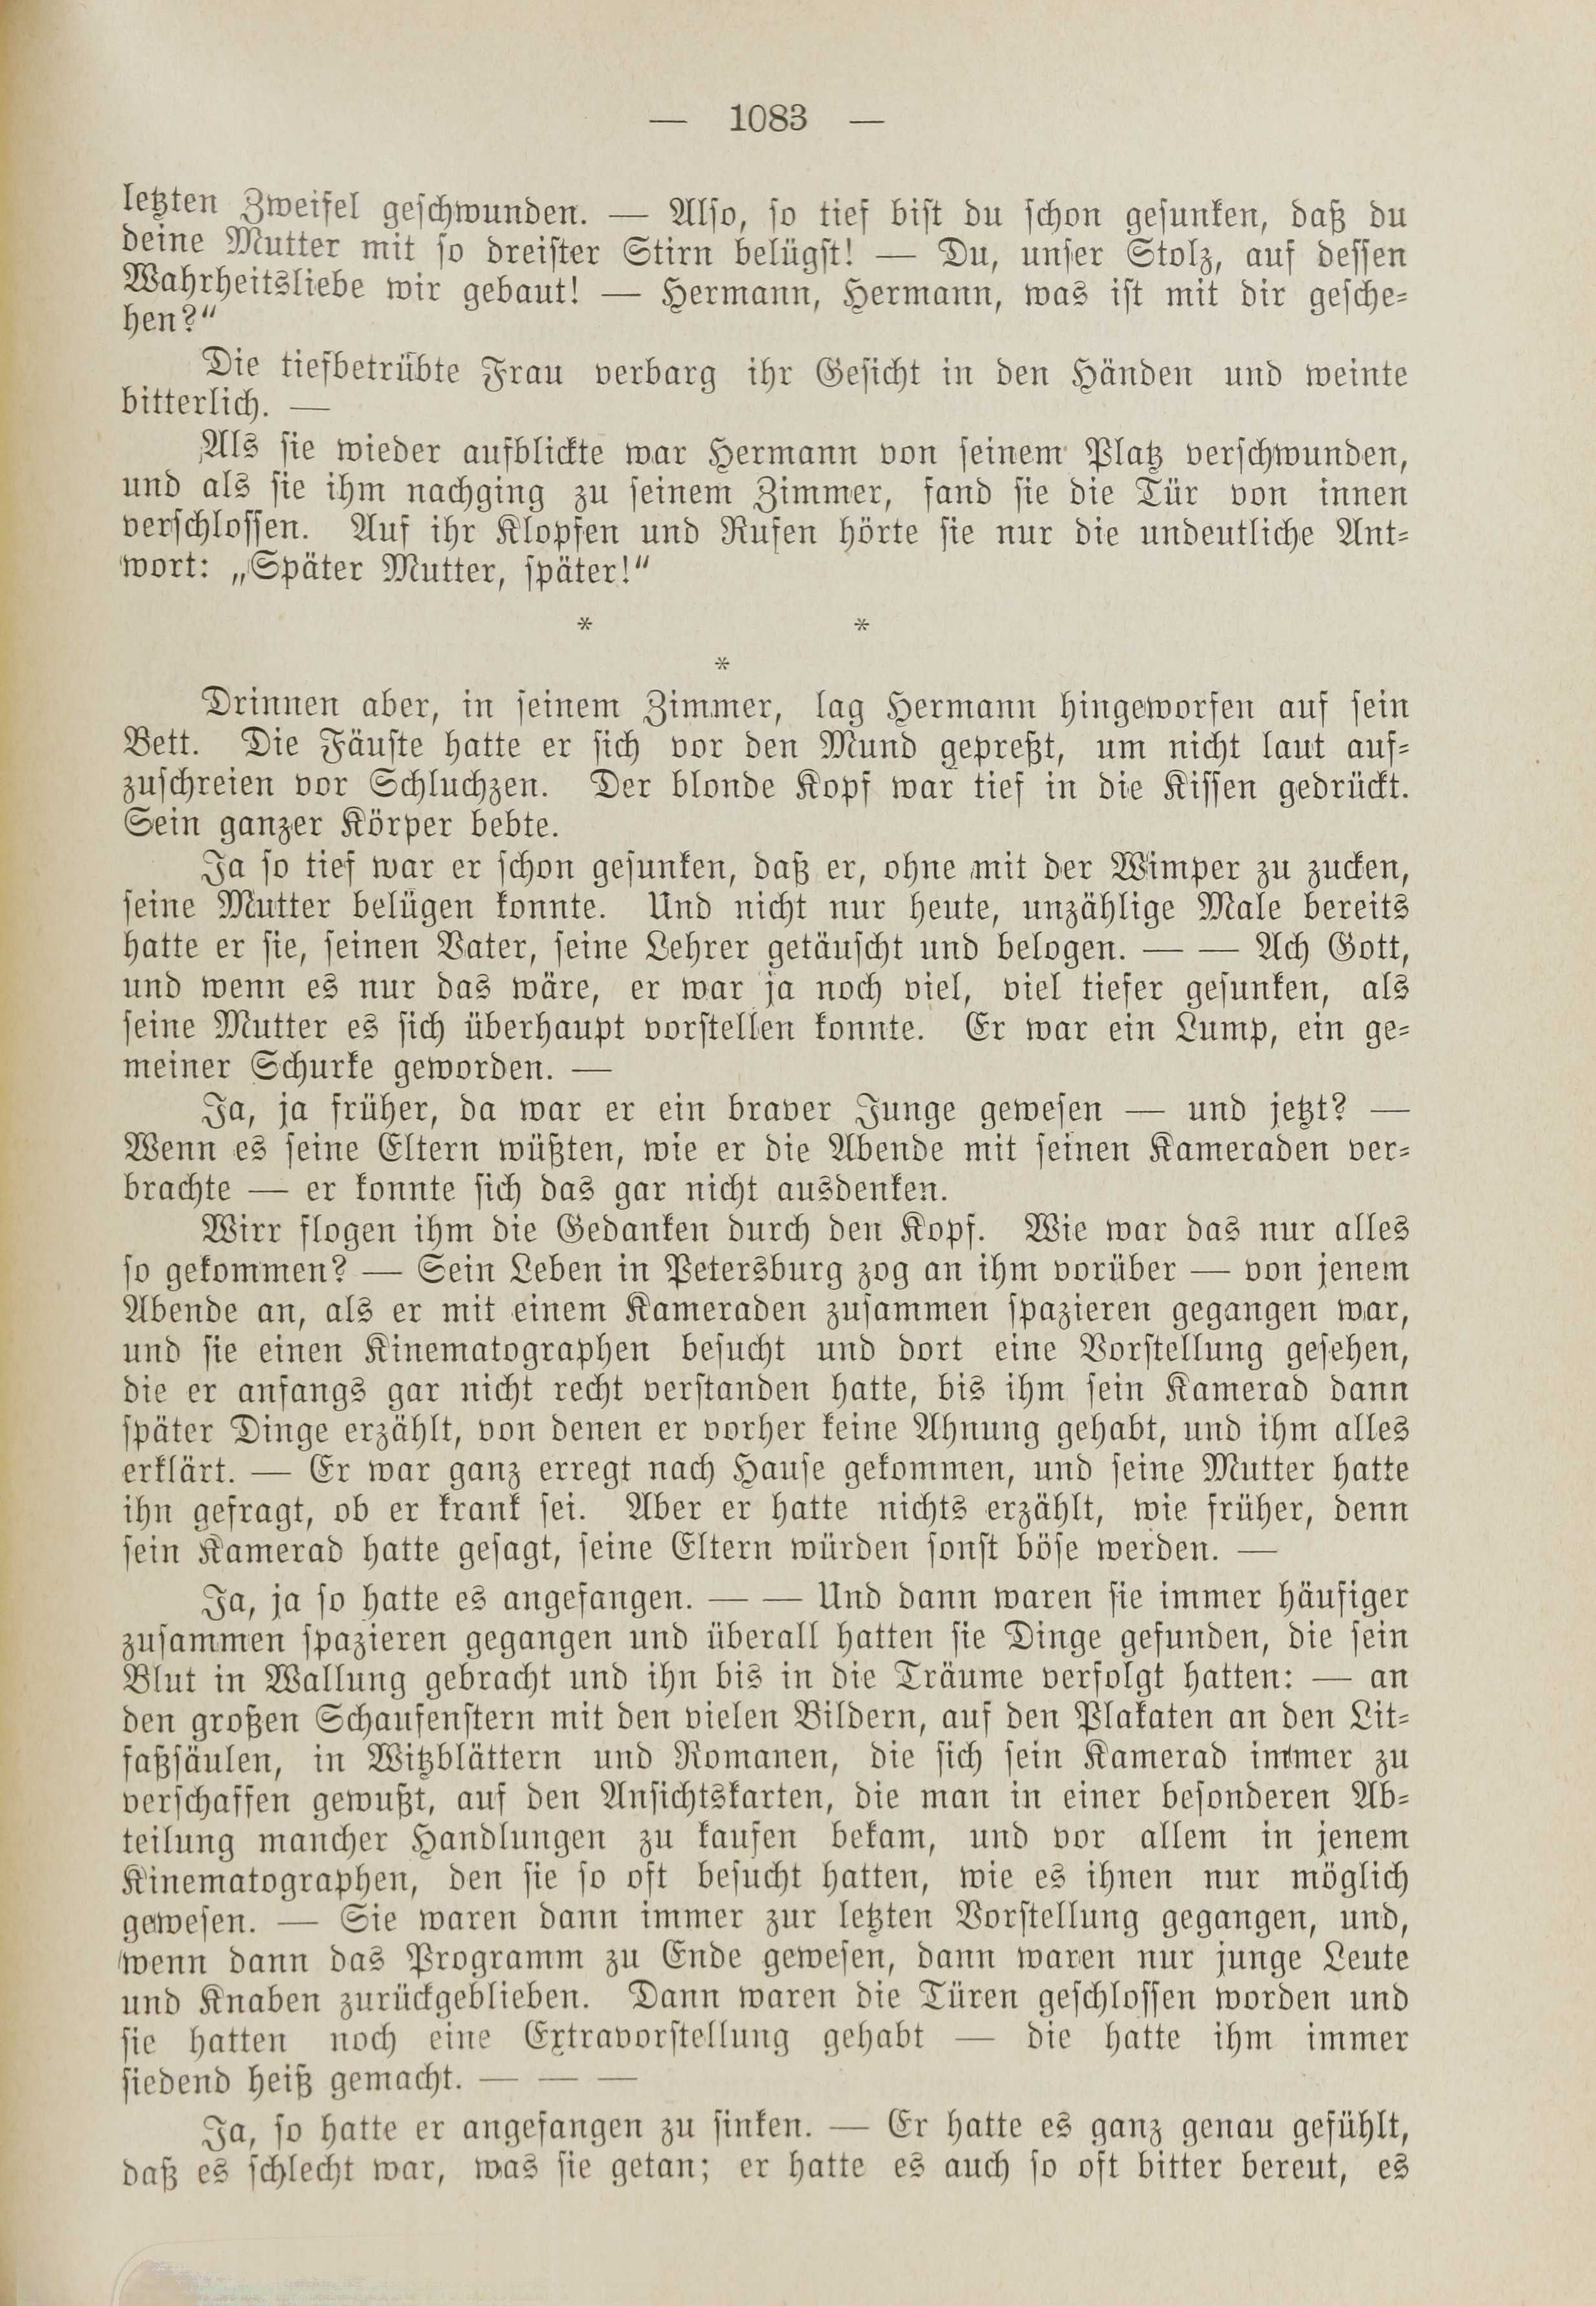 Deutsche Monatsschrift für Russland [1] (1912) | 1091. (1083) Main body of text